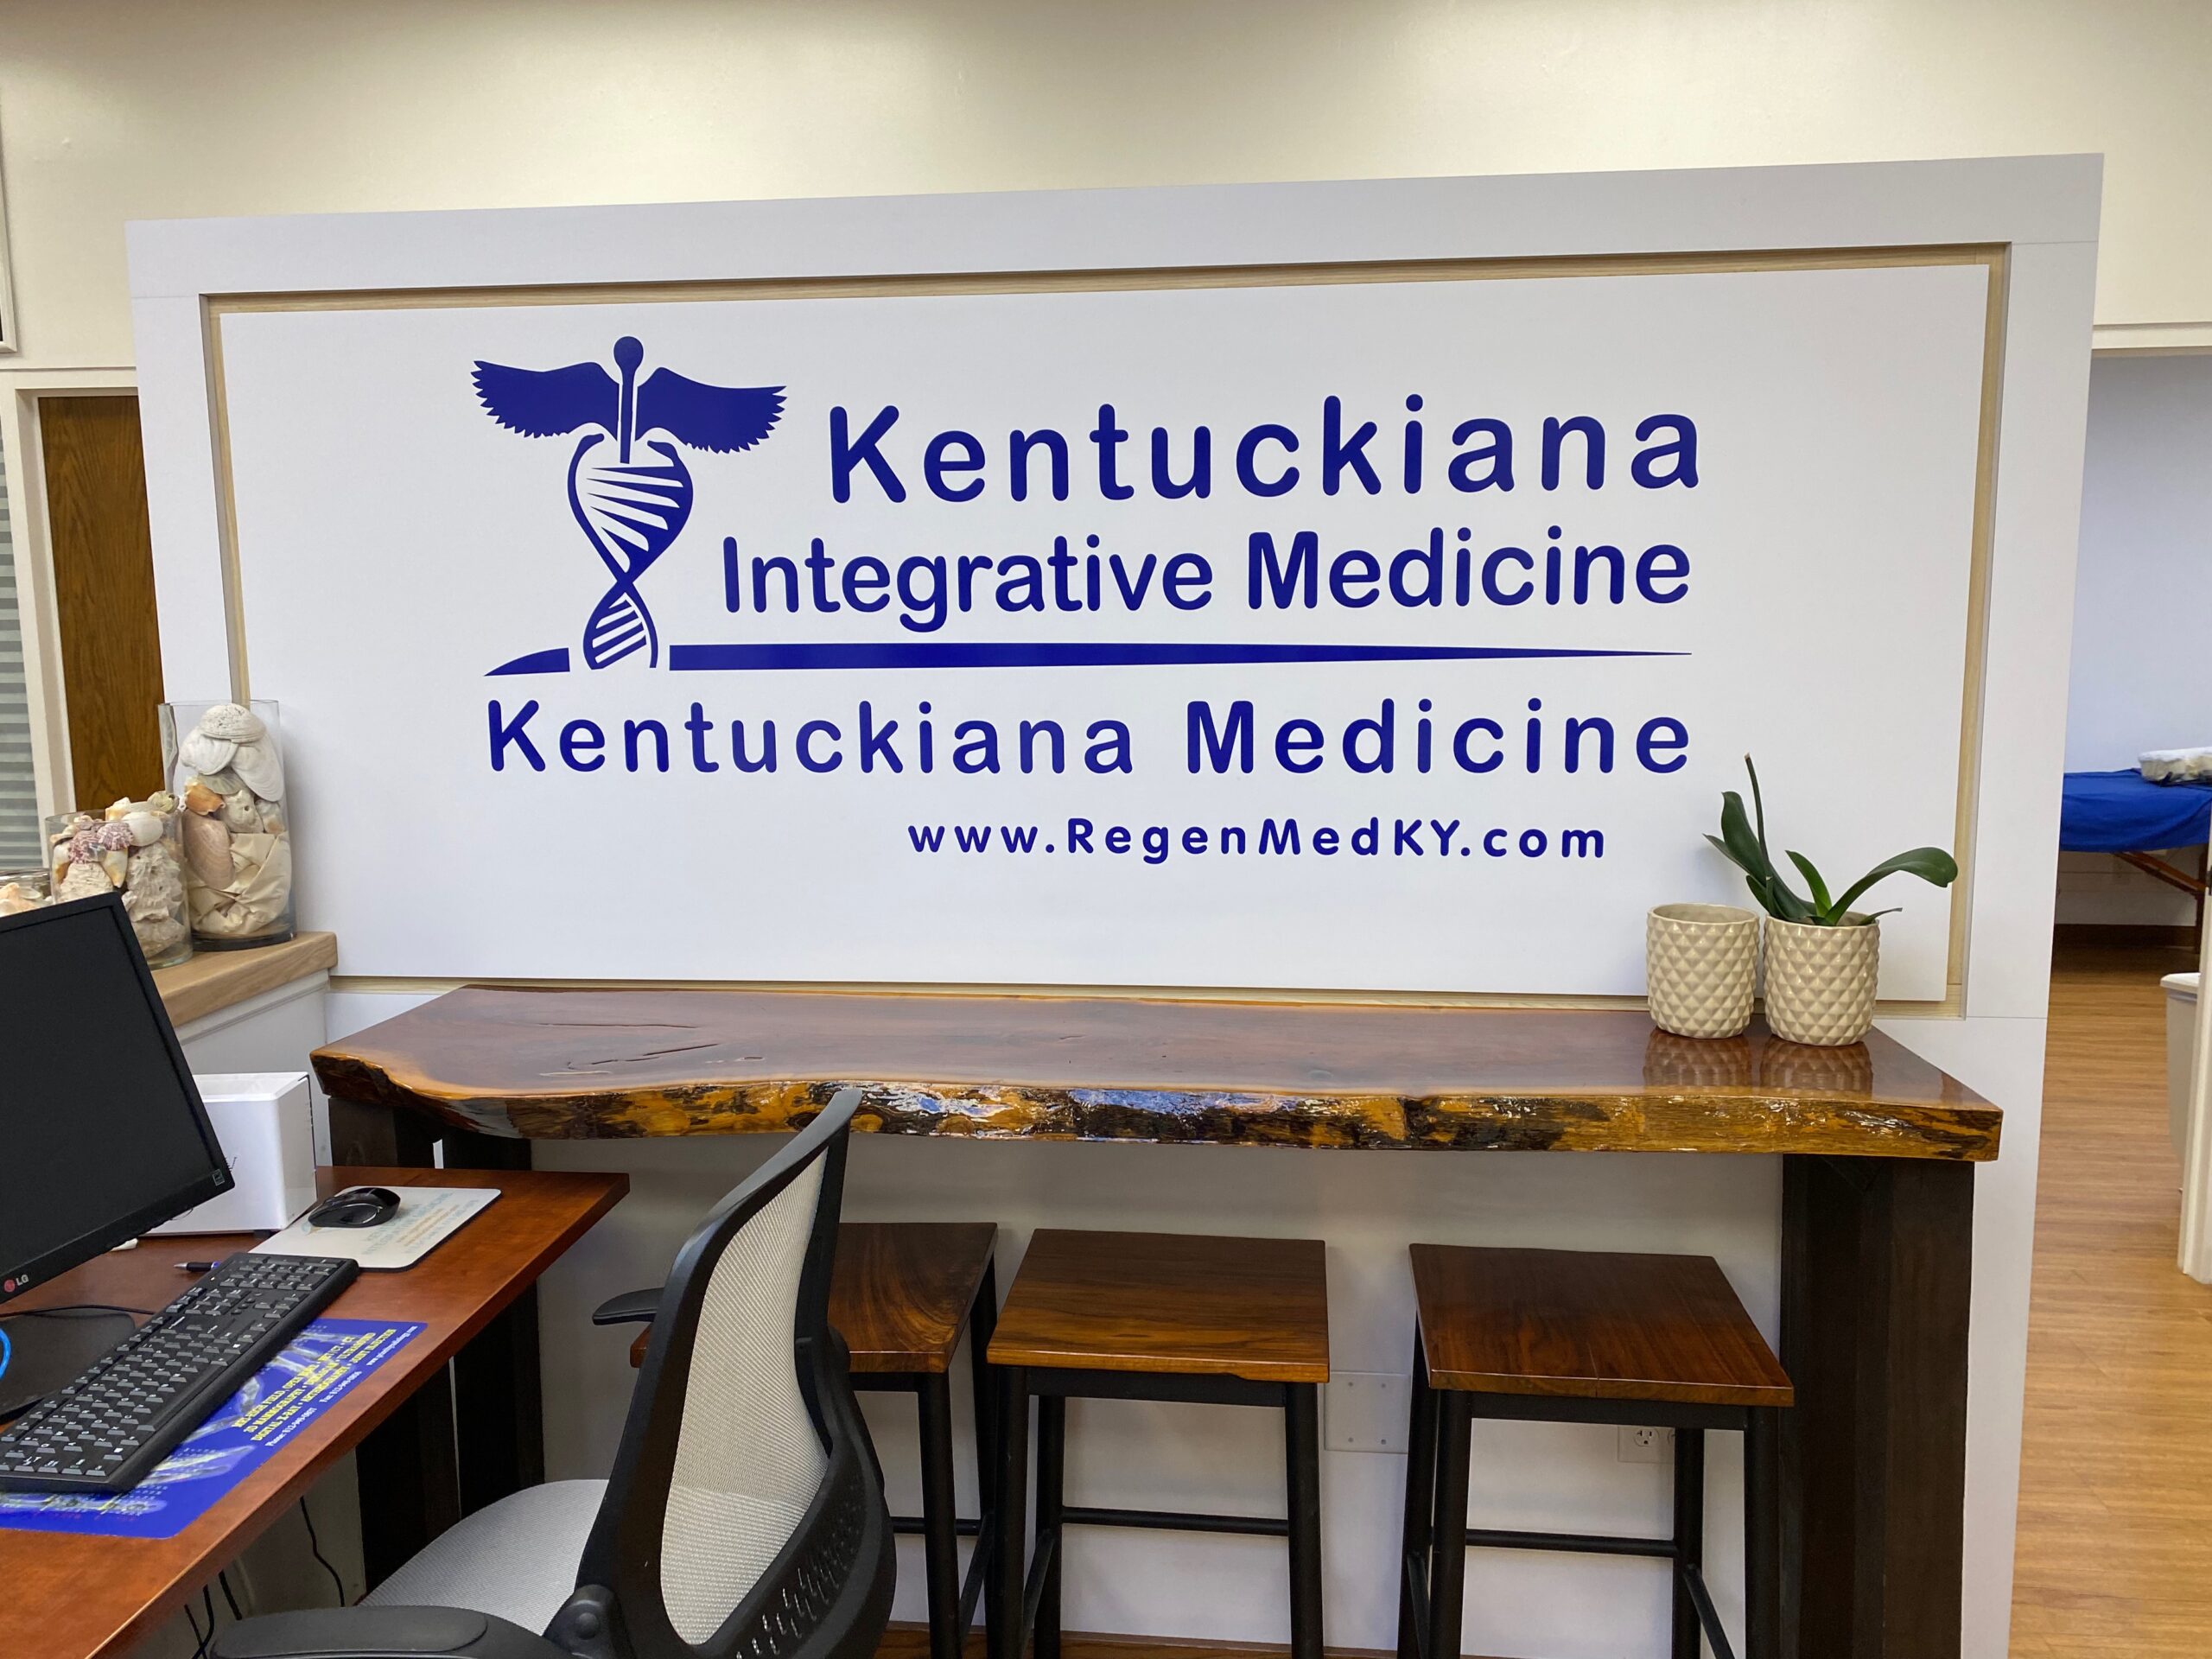 kentuckiana integrative medicine Jeffersonville sign